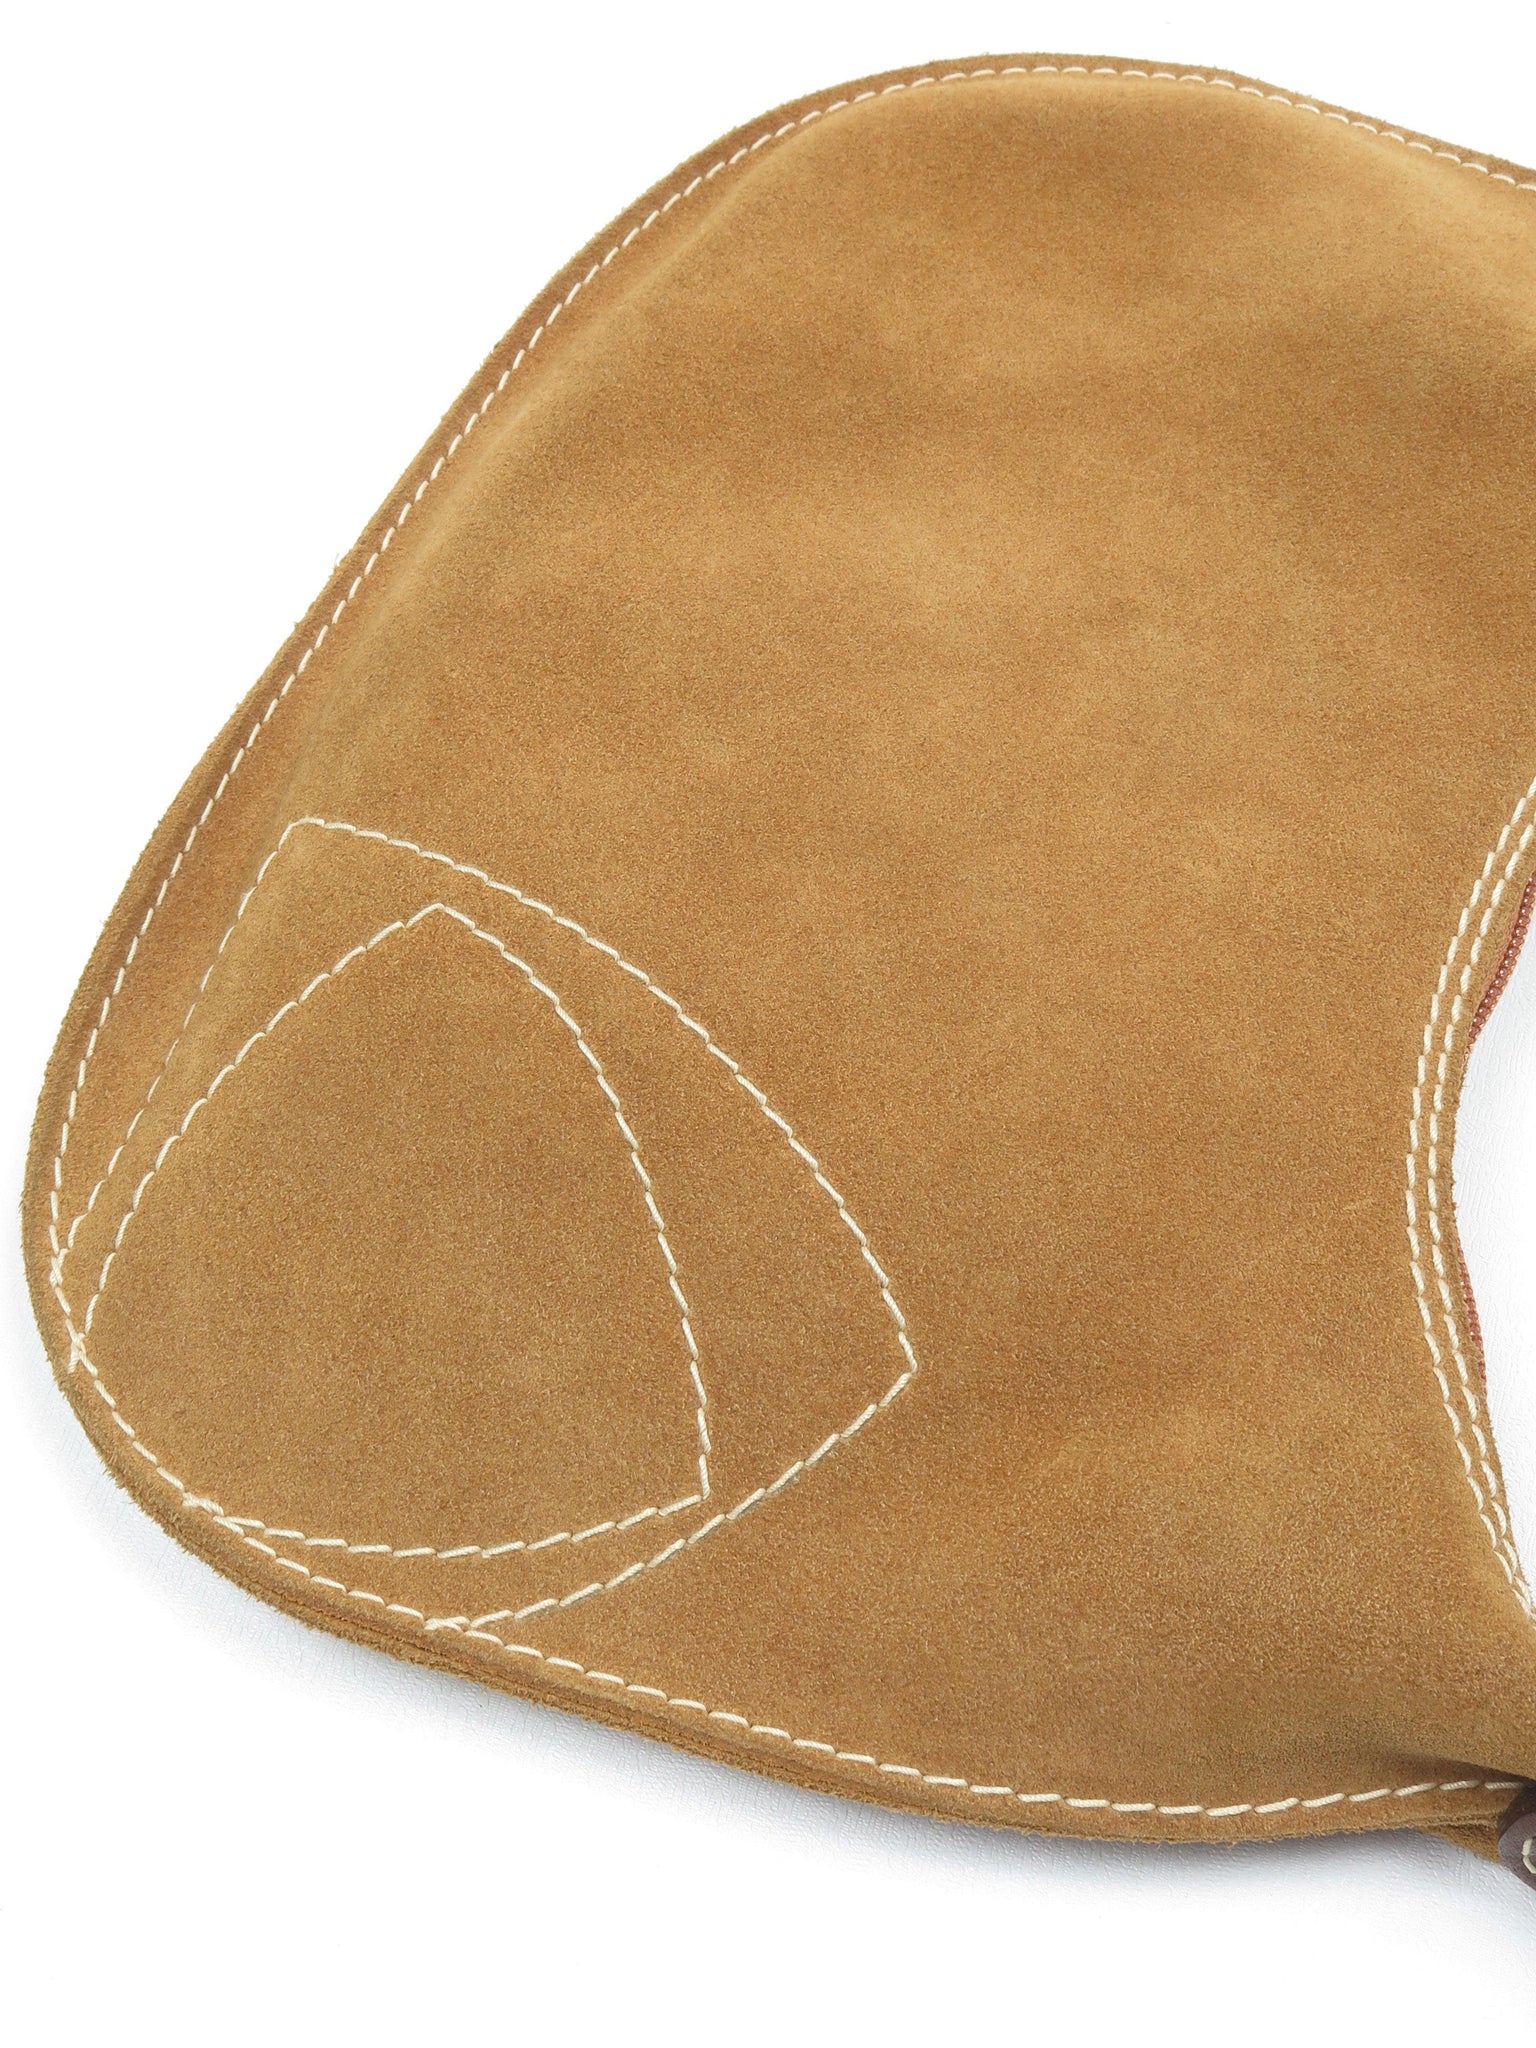 Suede Liz Claiborne Tan Vintage saddle Shoulder Bag - The Harlequin